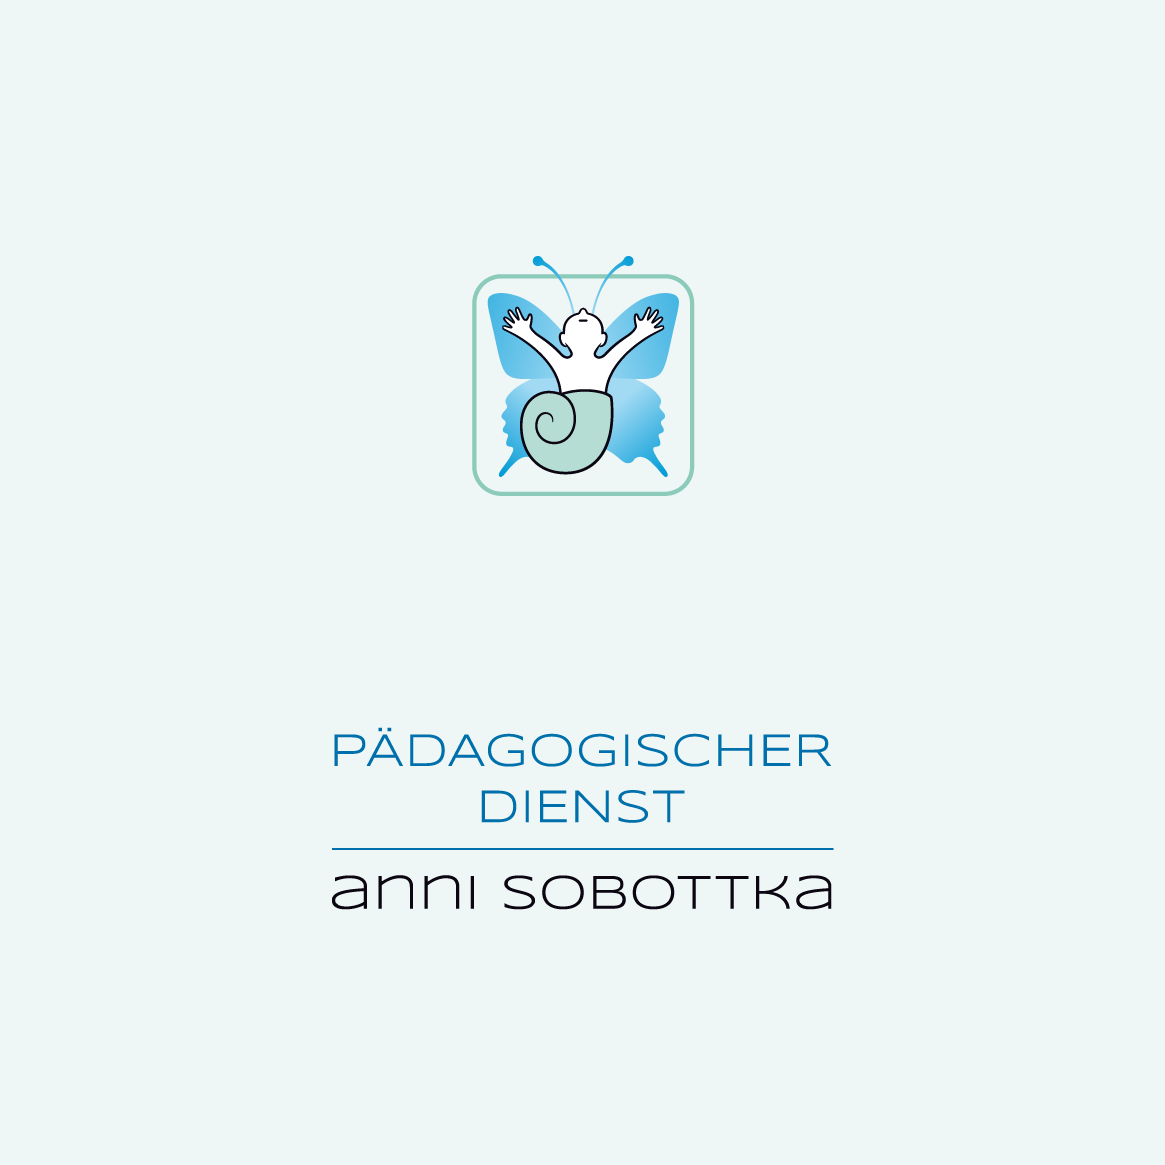 www.paedagogischerdienst.ch